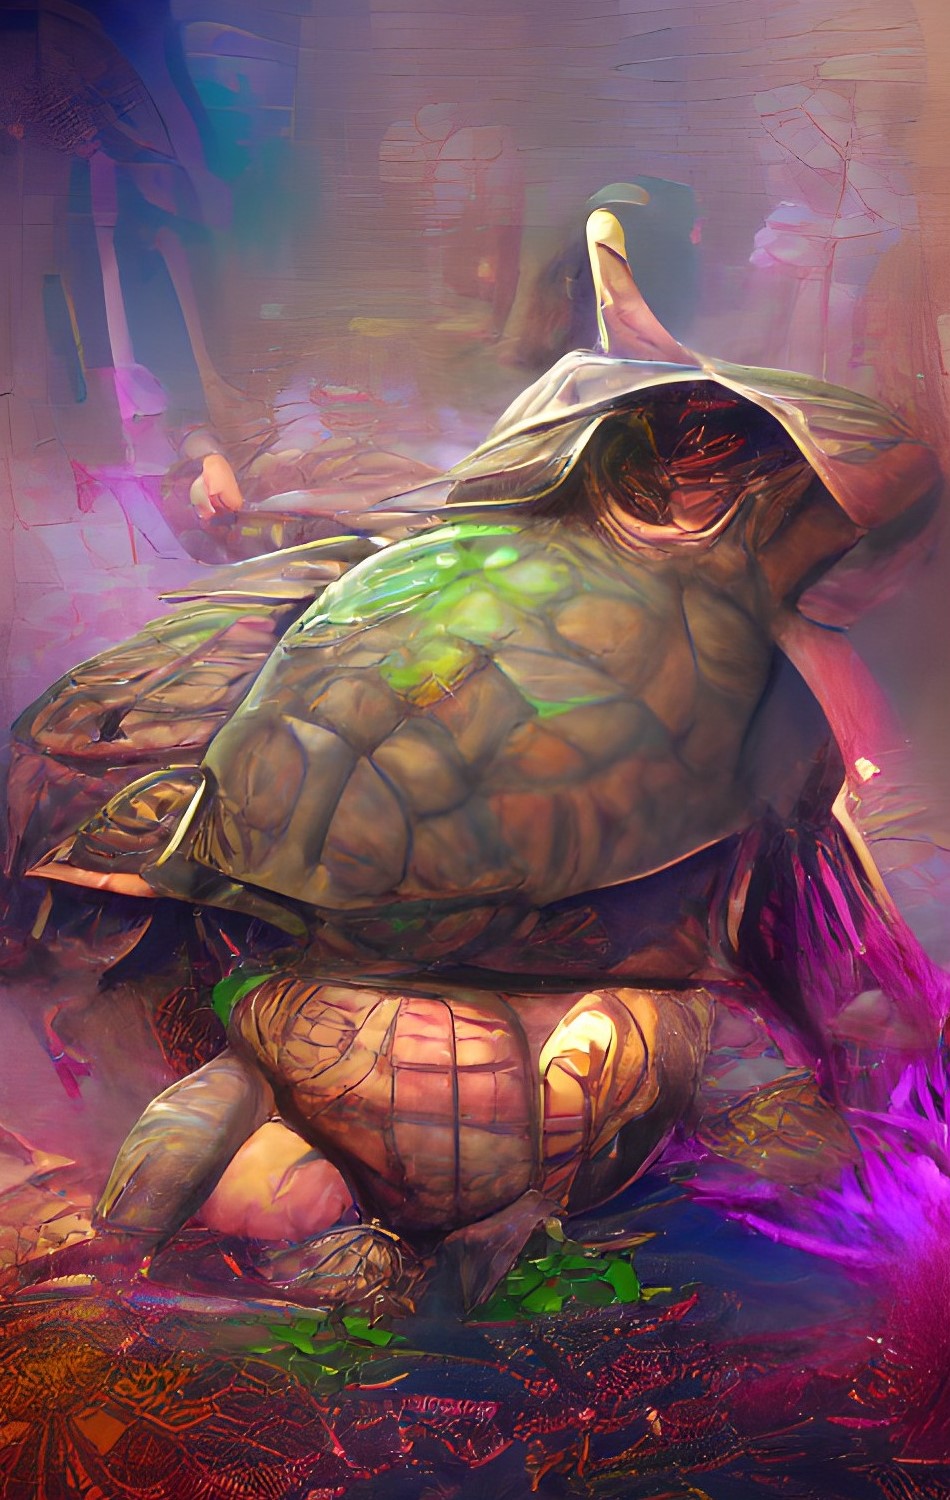 Turtles.jpg